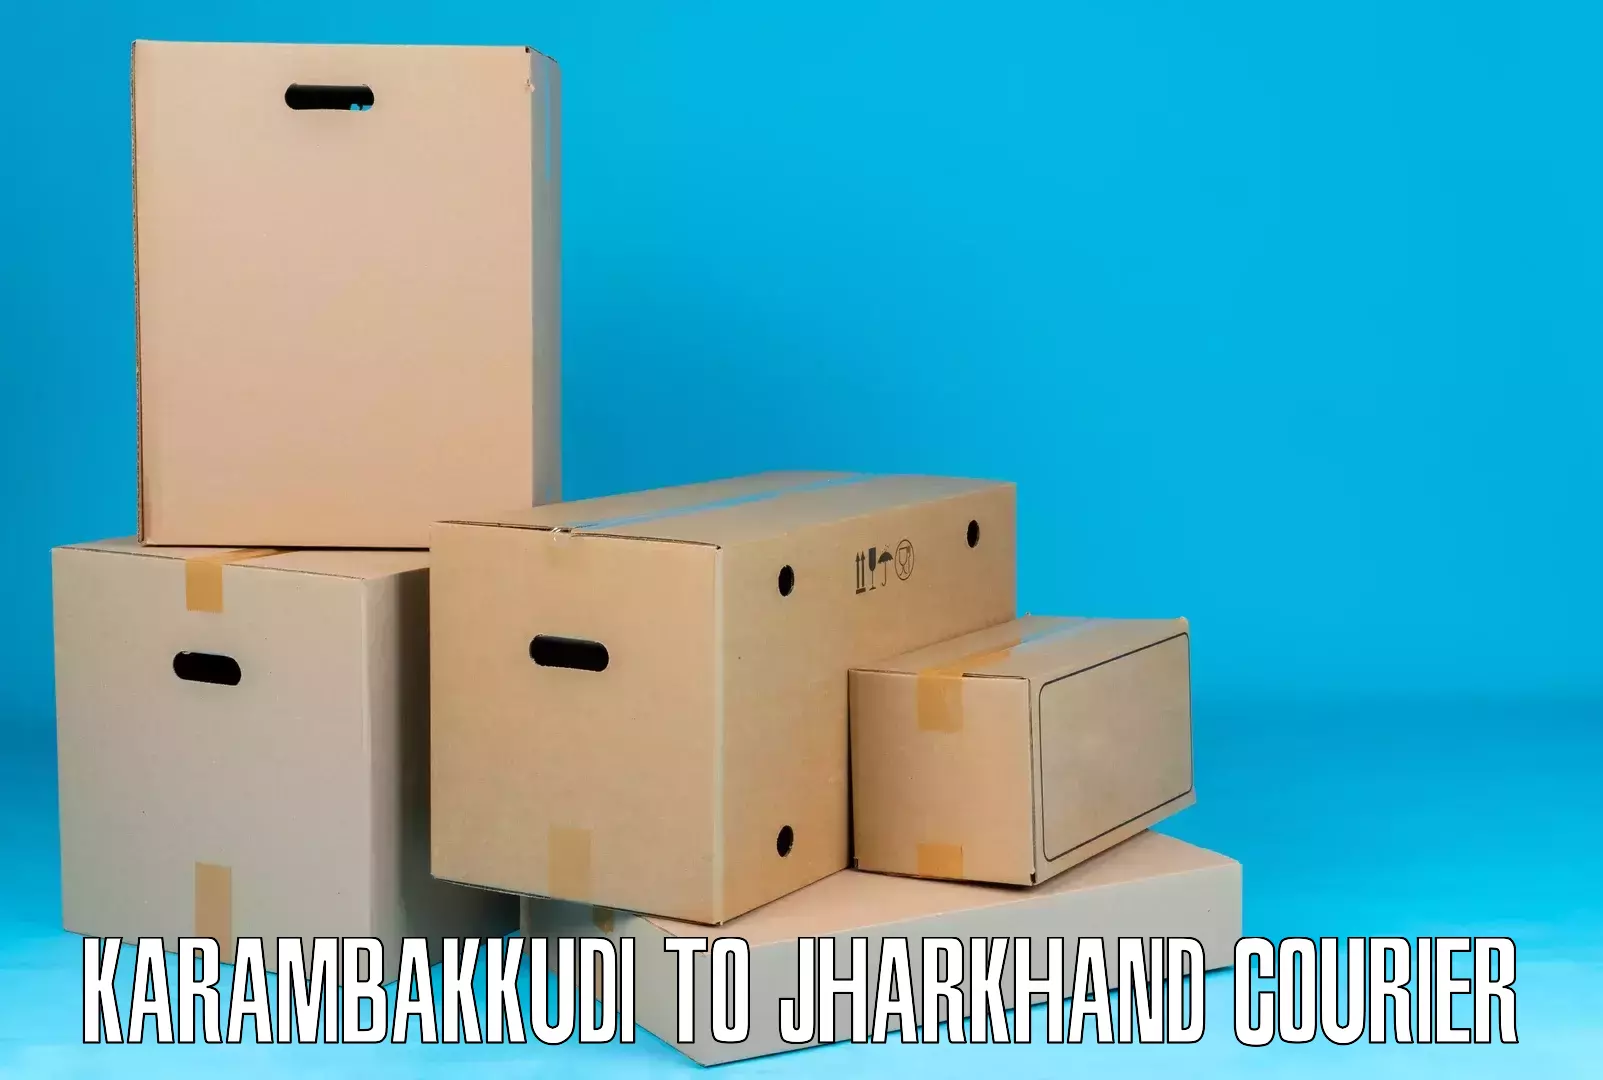 High-speed parcel service Karambakkudi to Barwadih